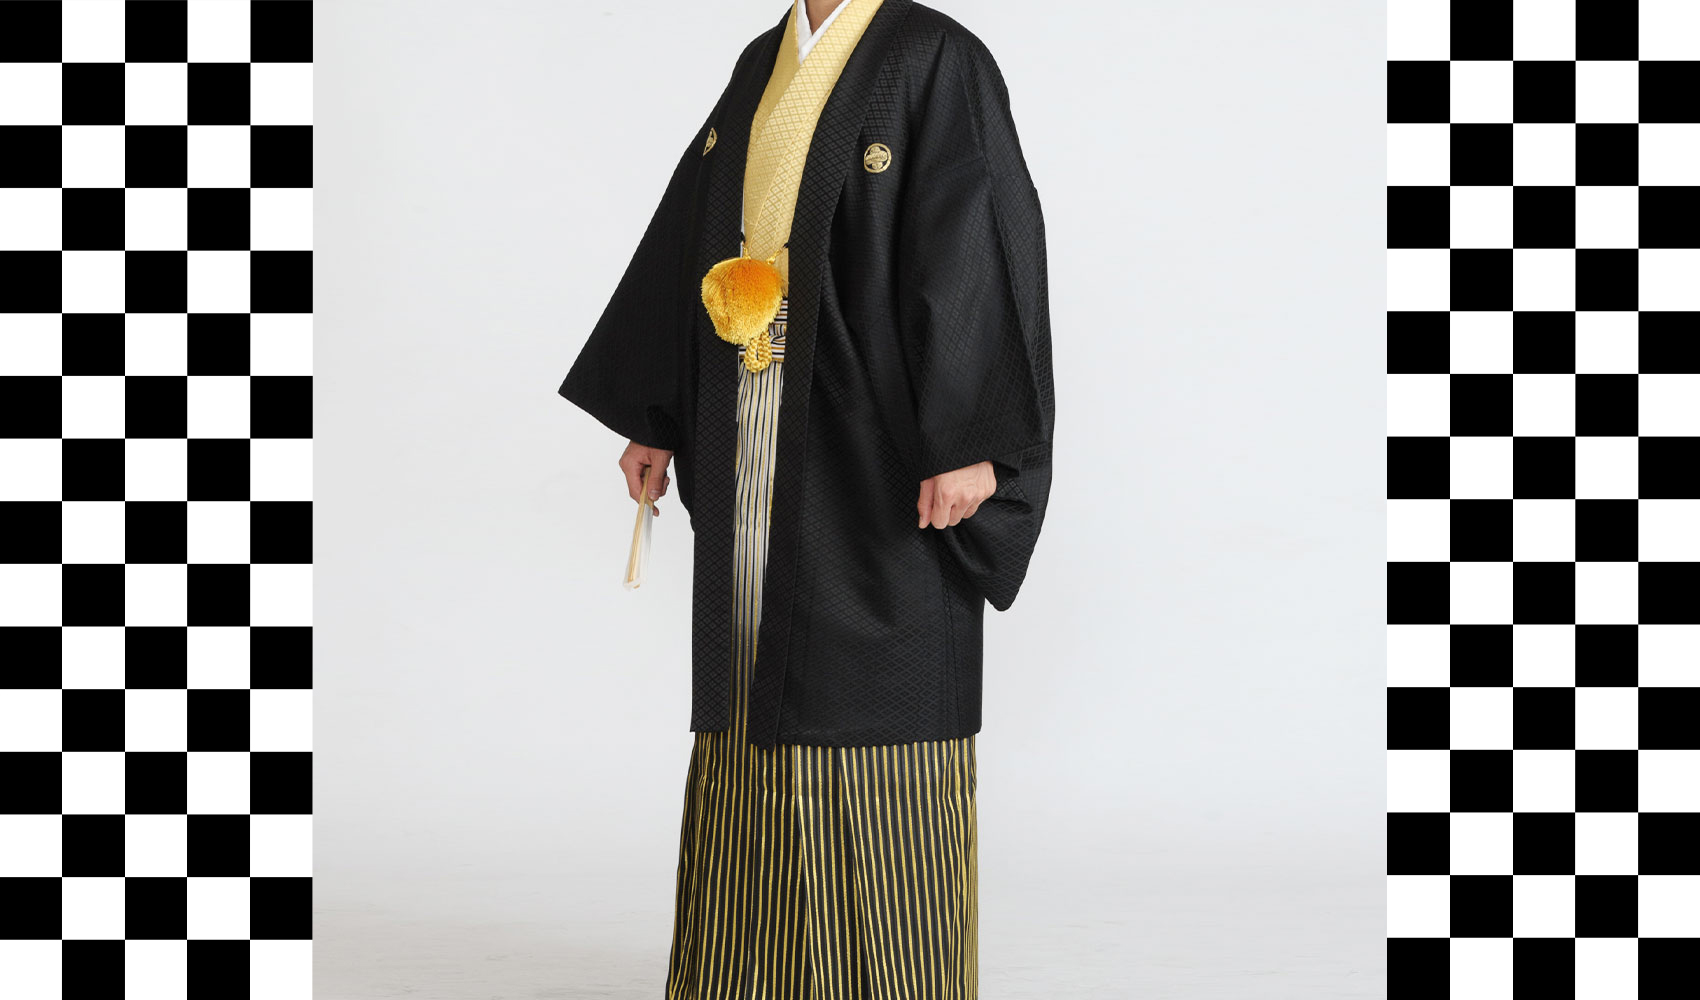 男性袴コレクション2。羽織が黒、着物がカラシ、袴が銀黒とゴールドが入った袴のコーデ